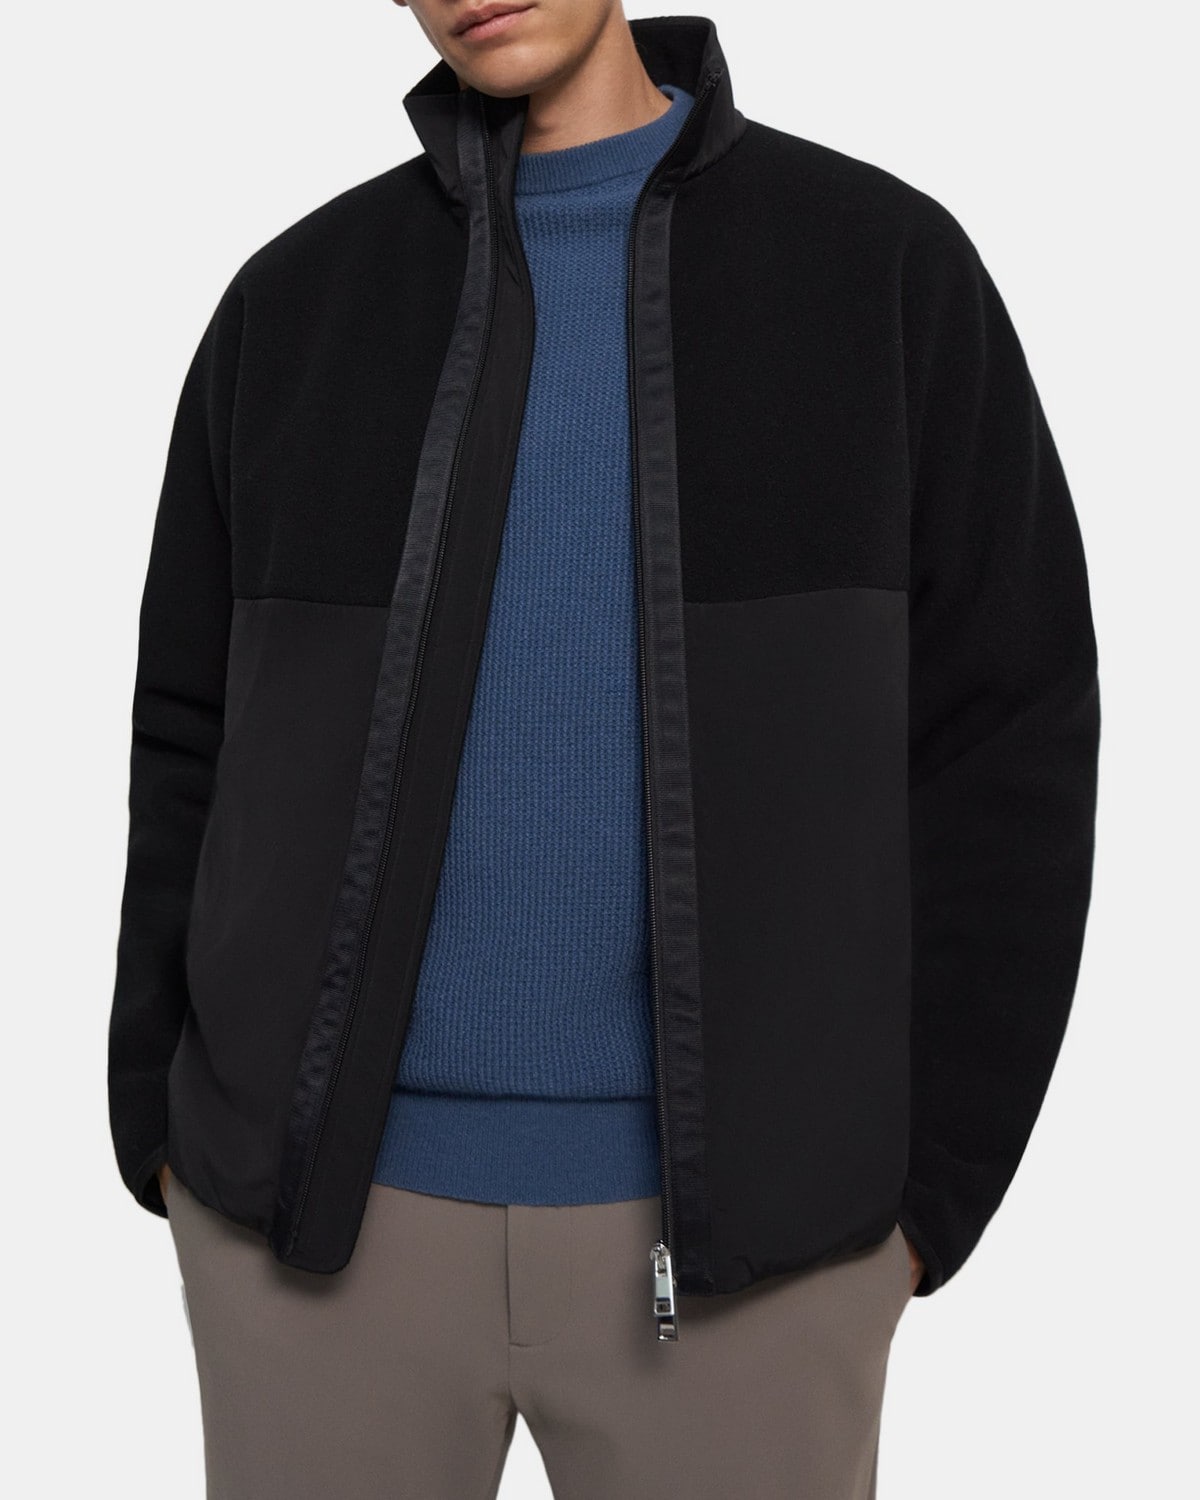 띠어리 맨 재킷 Theory Zip Jacket in Recycled Fleece,BLACK/BLACK